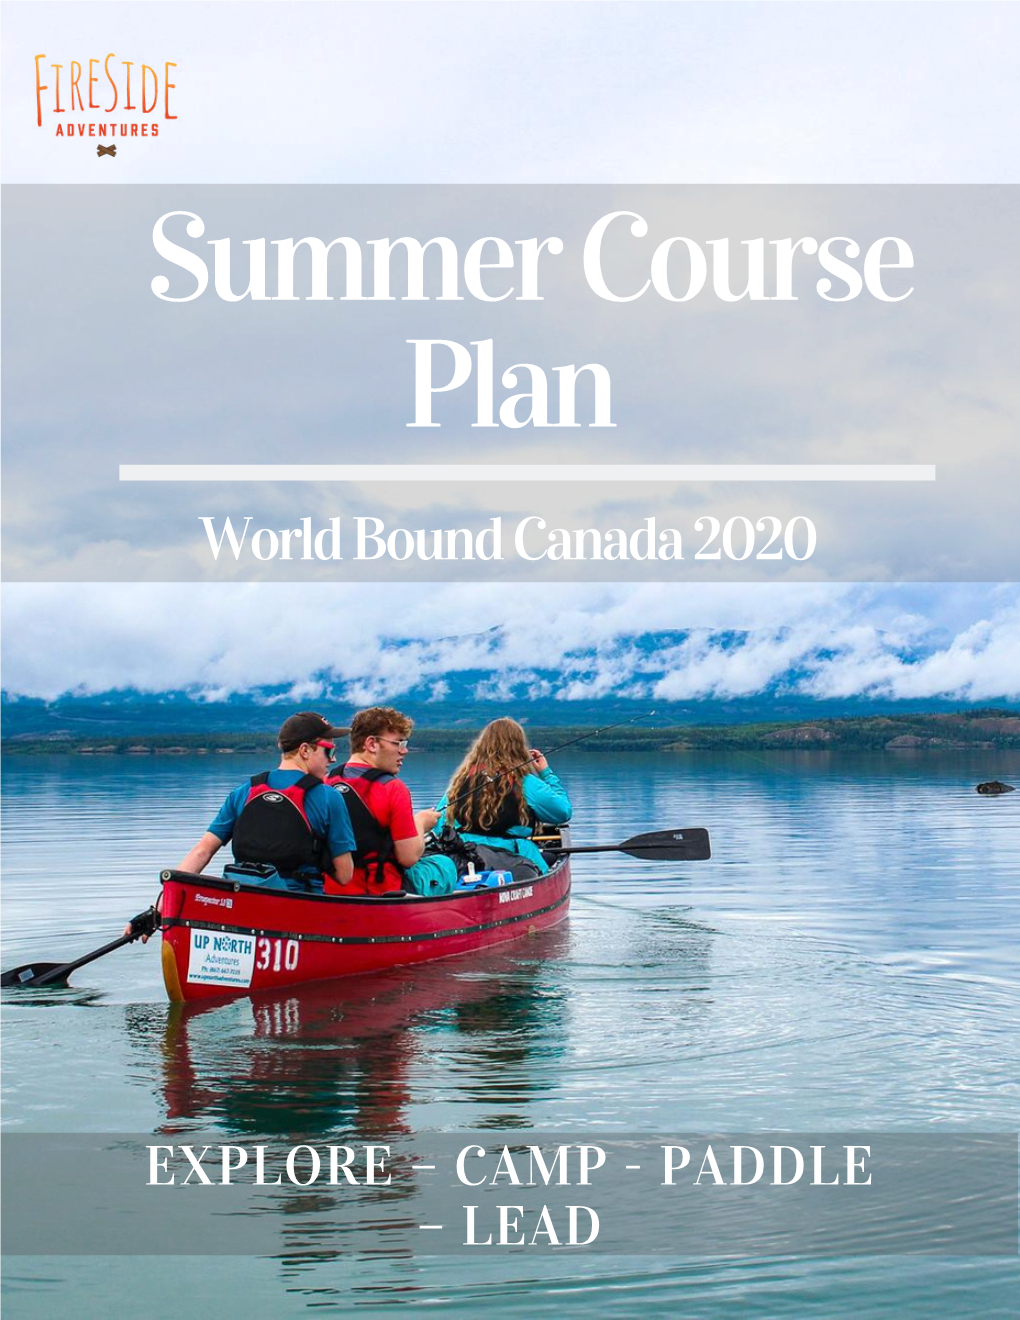 World Bound Canada Plan Trip